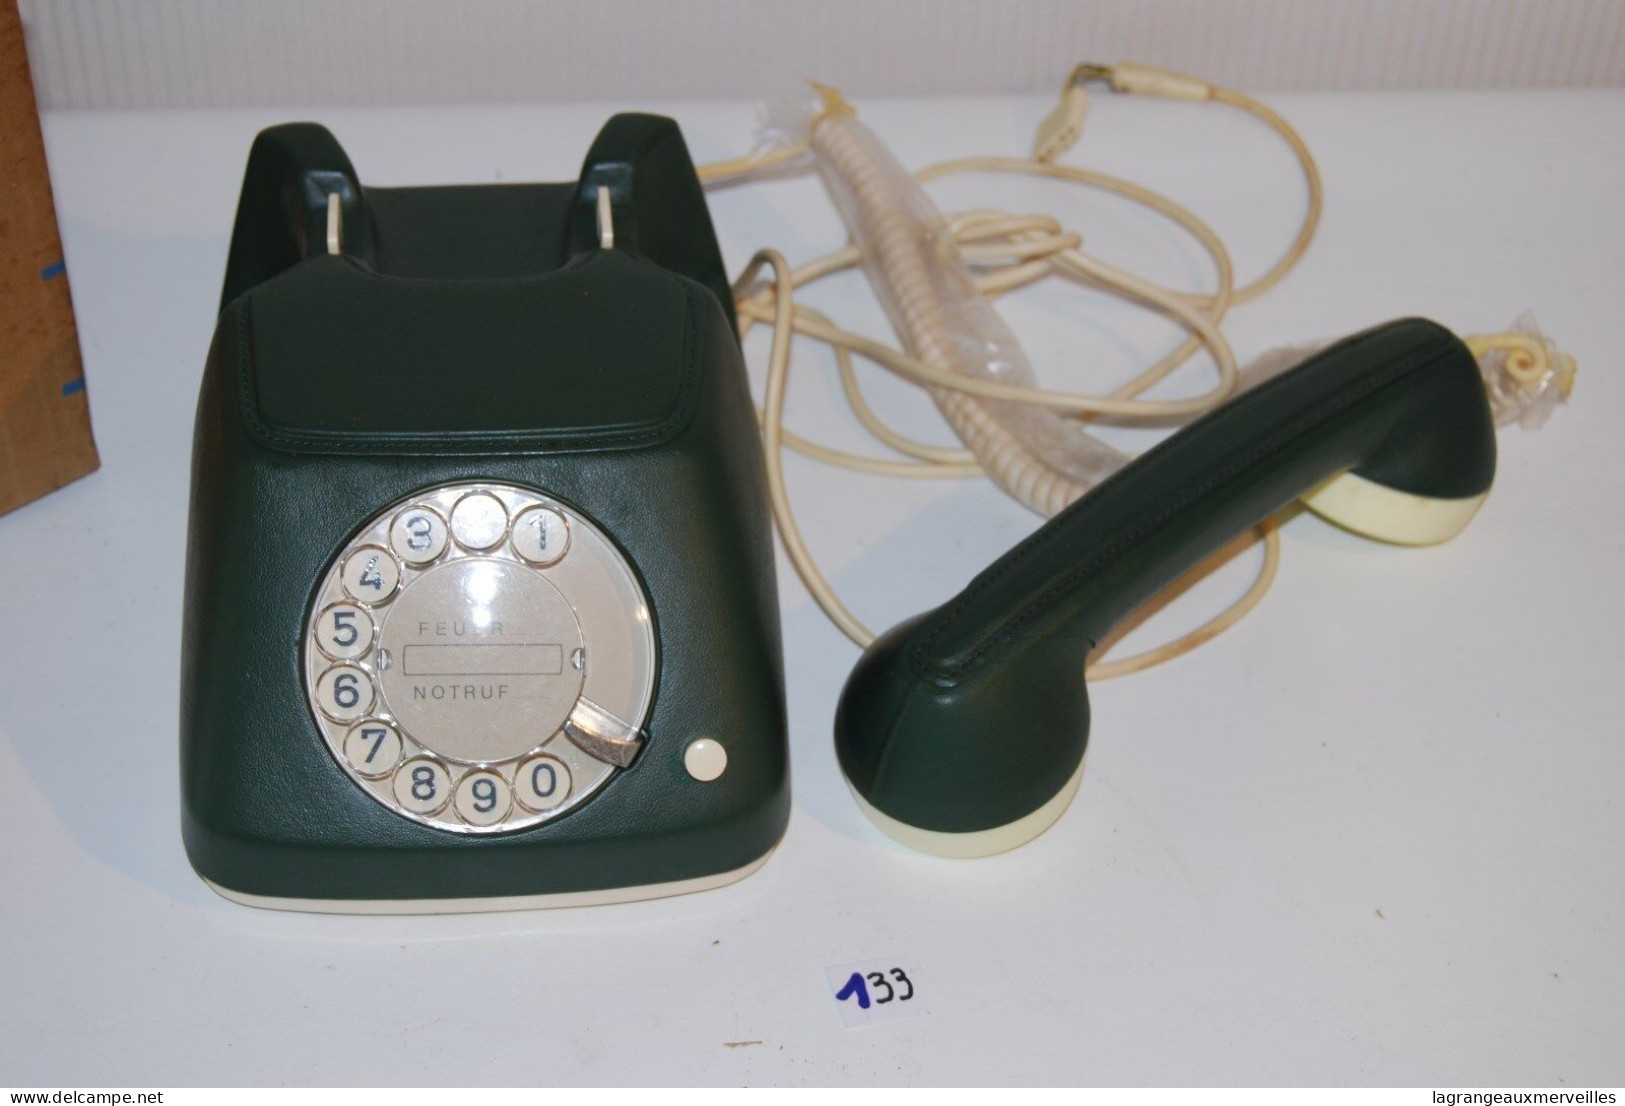 C132 Vintage Retro Phone FEUER NOTRUF Germany LUXE EN CUIR Leather Vert - Telefontechnik